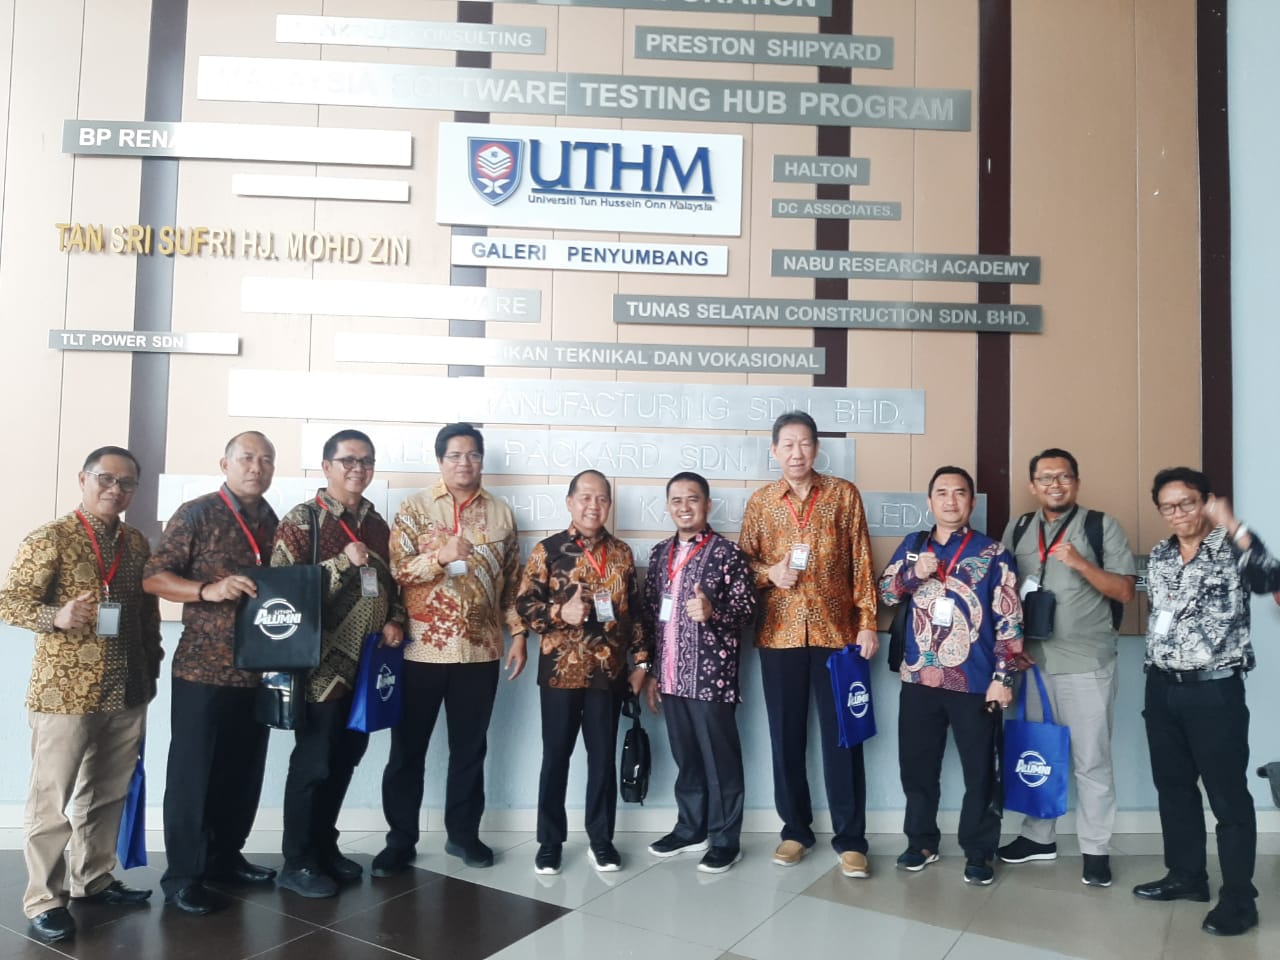 Sukses APTISI Wilayah 2A Sumsel Babel Melaksanakan MOU Dengan UTHM dan UiTM ke Malaysia dan Singapore